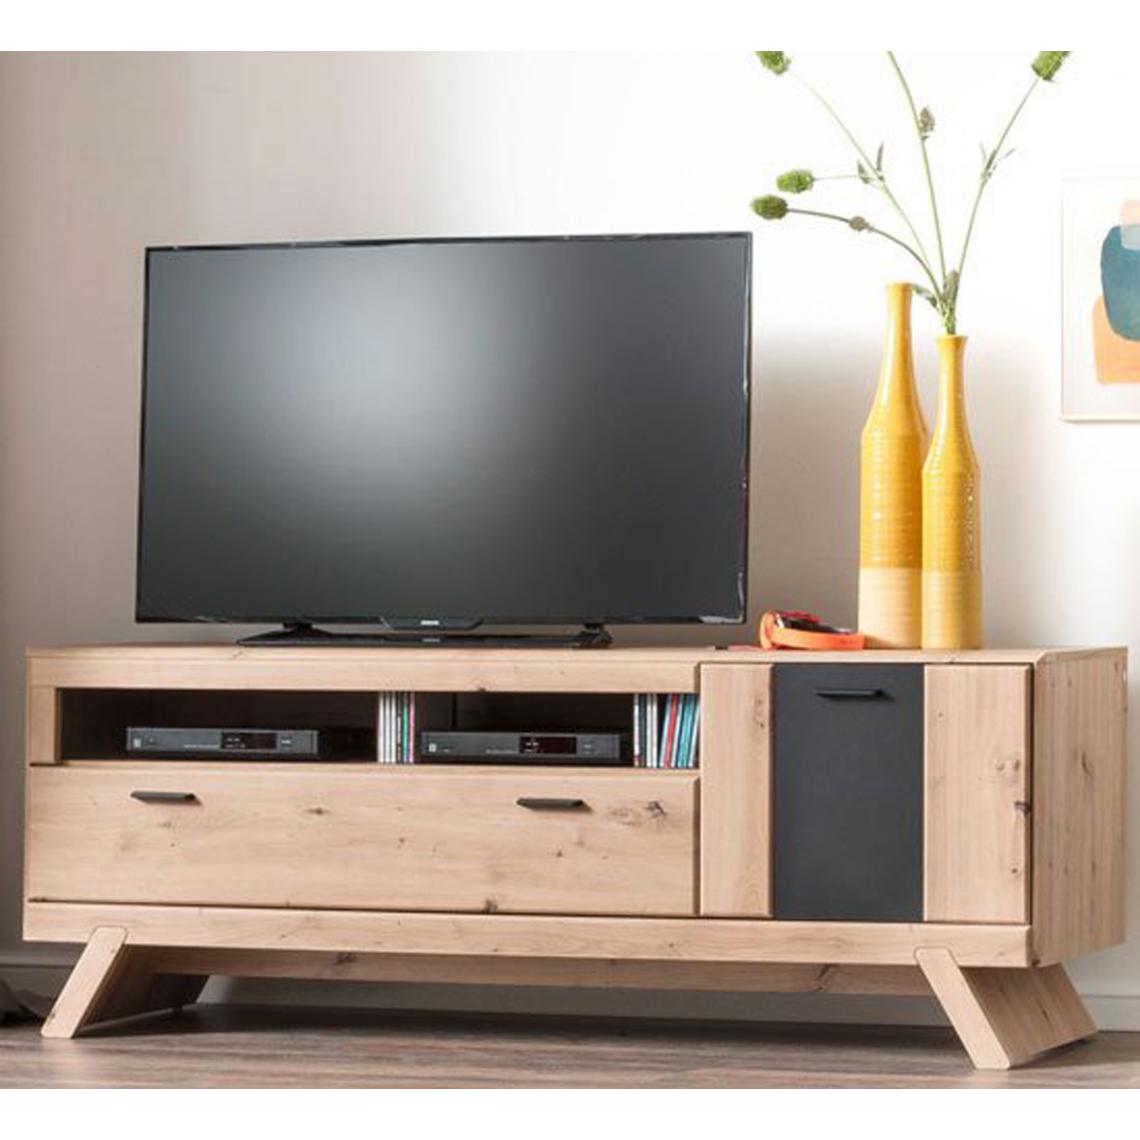 Pegane - Meuble TV coloris chêne - Longueur 159 x Hauteur 65 x Profondeur 51 cm - Meubles TV, Hi-Fi